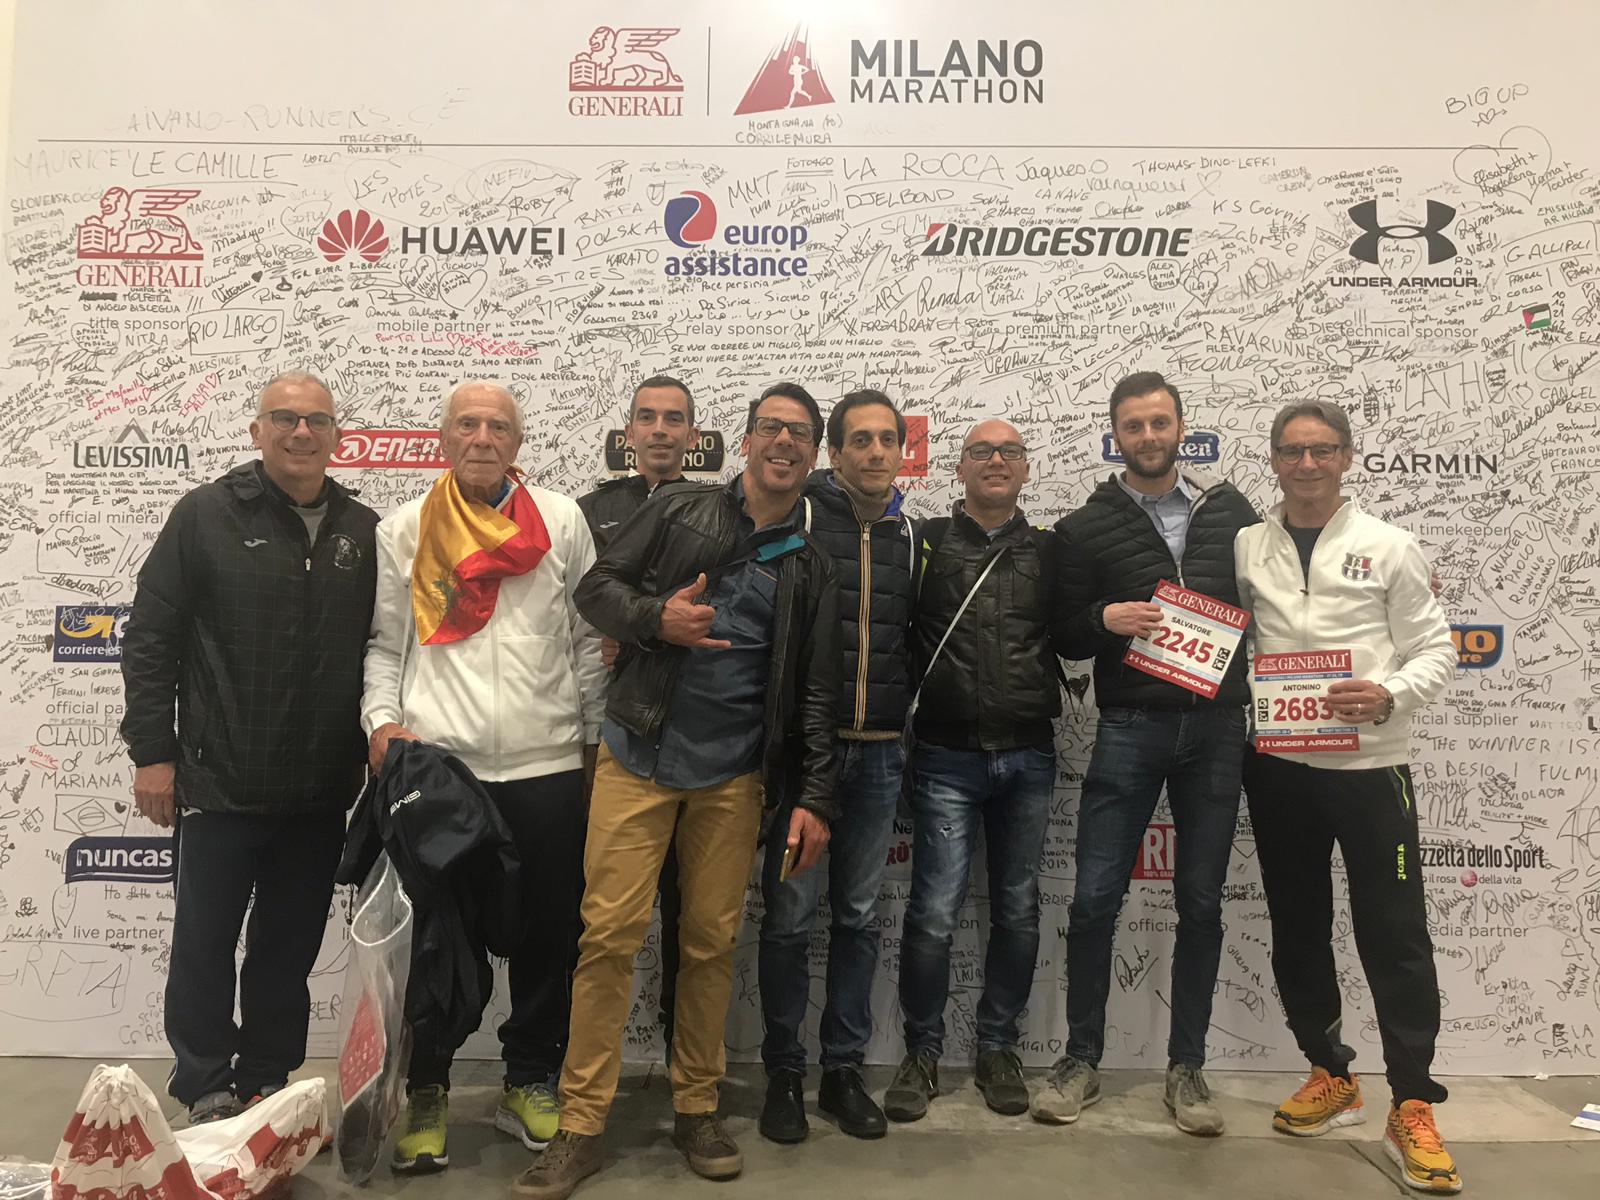 Nino Russo ed Edoardo Vaghetto della Polisportiva Atletica Bagheria primi di categoria alla 19esima Maratona di Milano